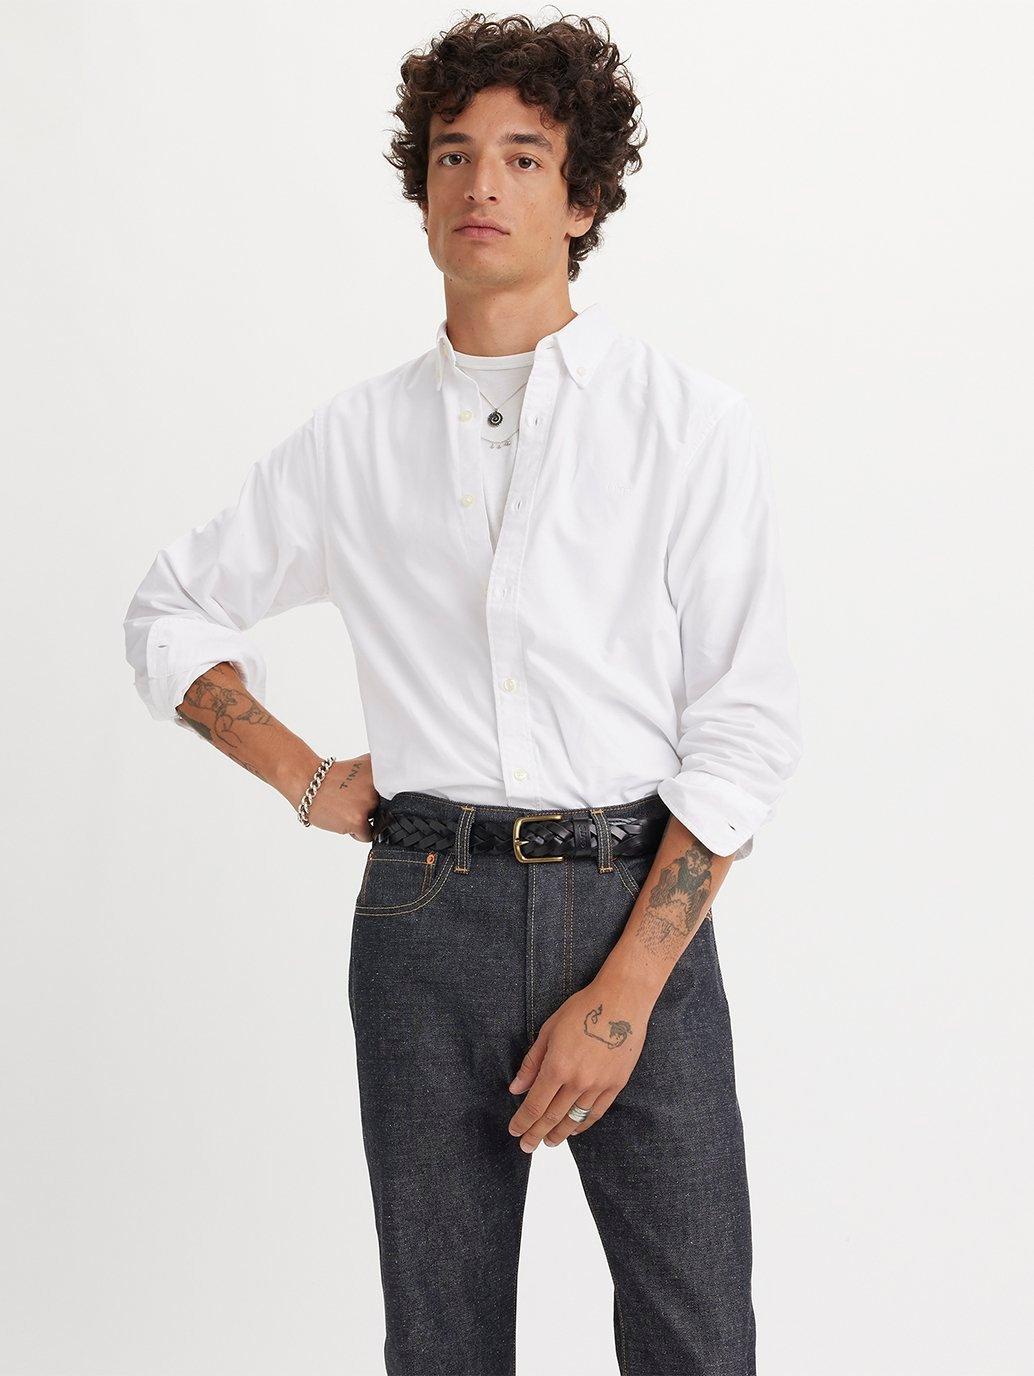 Buy Levi's® Men's Authentic Button-Down Shirt| Levi's® Official Online ...